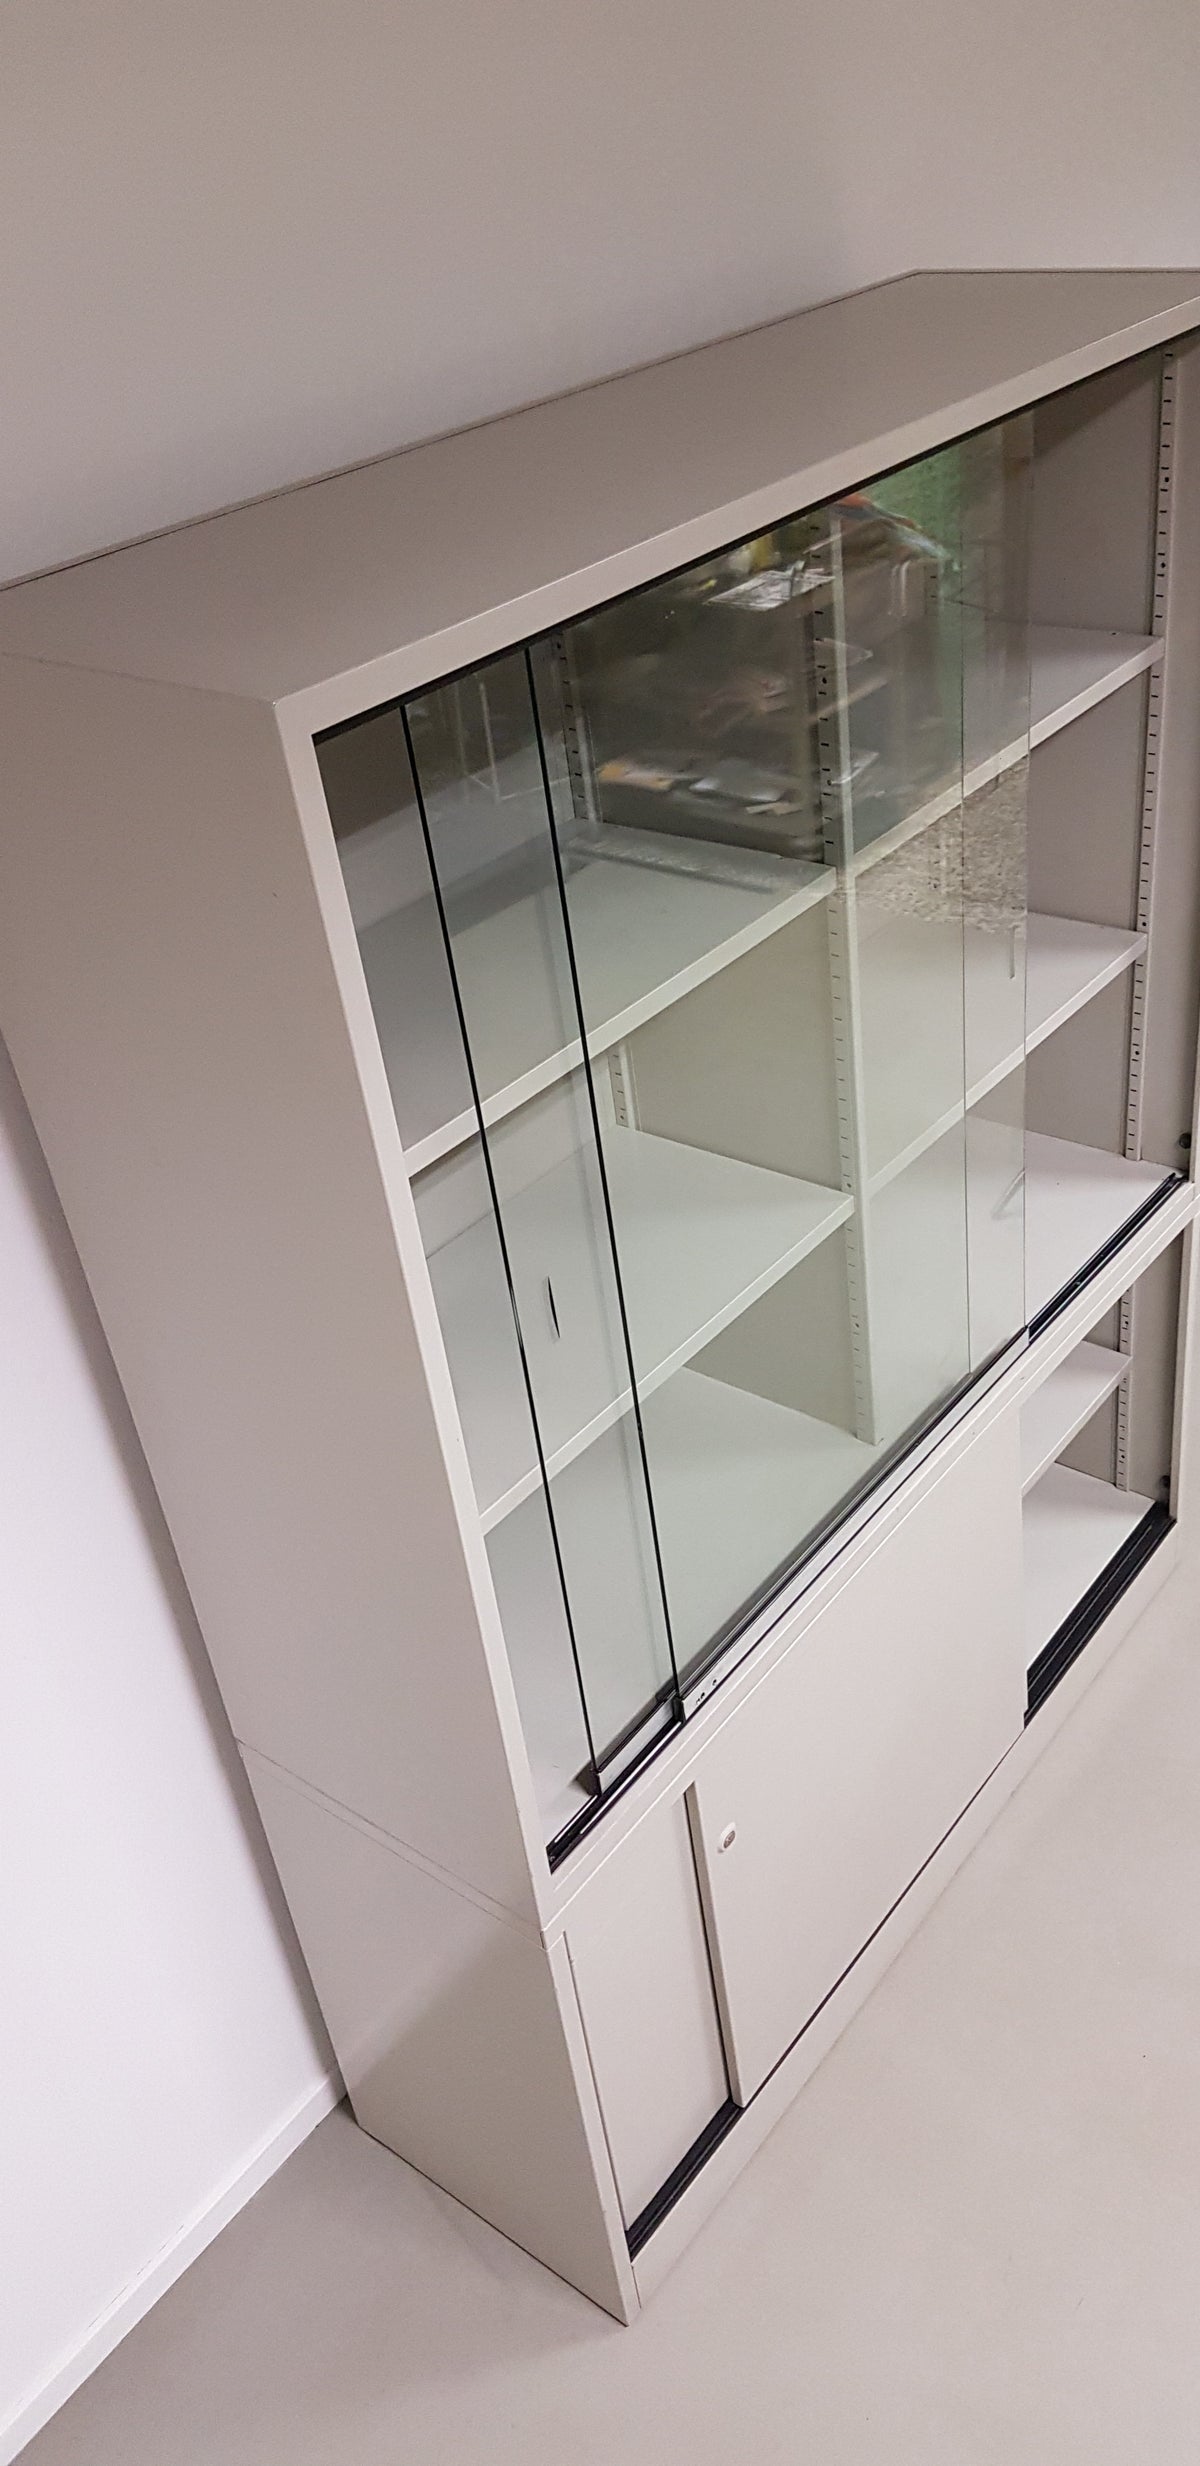 2 x Laboratorium Cabinet